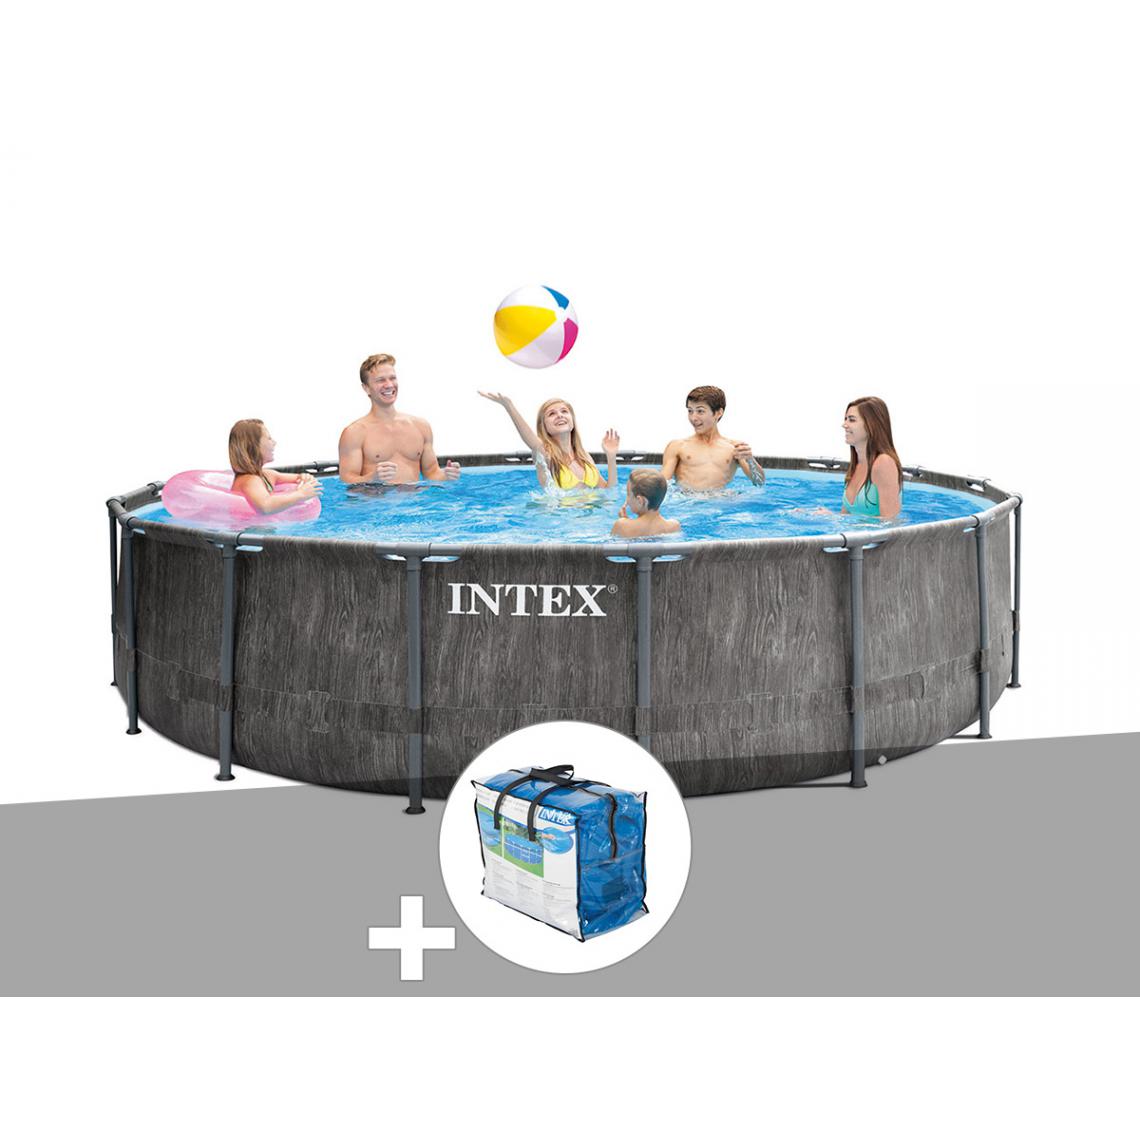 Intex - Kit piscine tubulaire Intex Baltik ronde 5,49 x 1,22 m + Bâche à bulles - Piscine Tubulaire